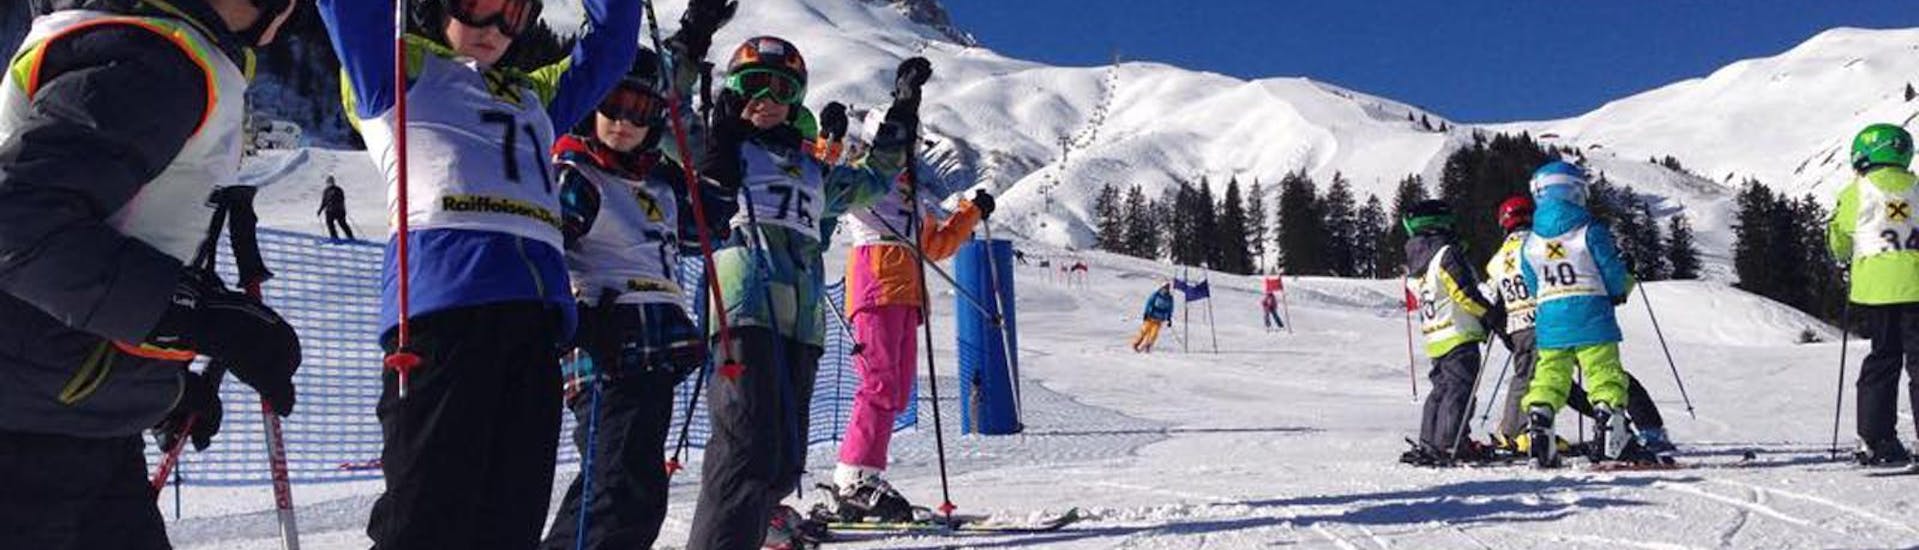 Lezioni di sci per bambini a partire da 4 anni per principianti con Ski School Warth.